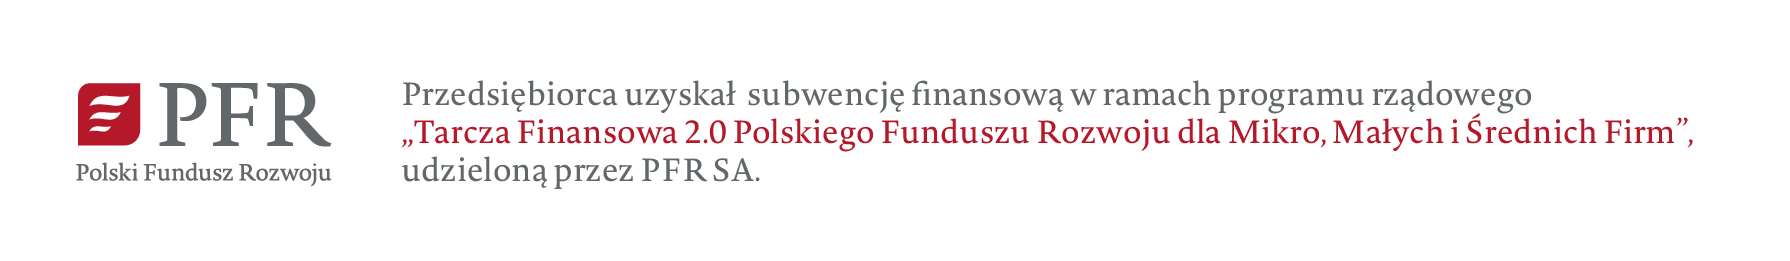 Przedsiębiorca uzyskał subwencję finansową w ramach programu rządowego tarcza finansowa 2.0 Polskiego funduszu rozowoju dla mikro, małych i średnich firm udzieloną przez PFR SA